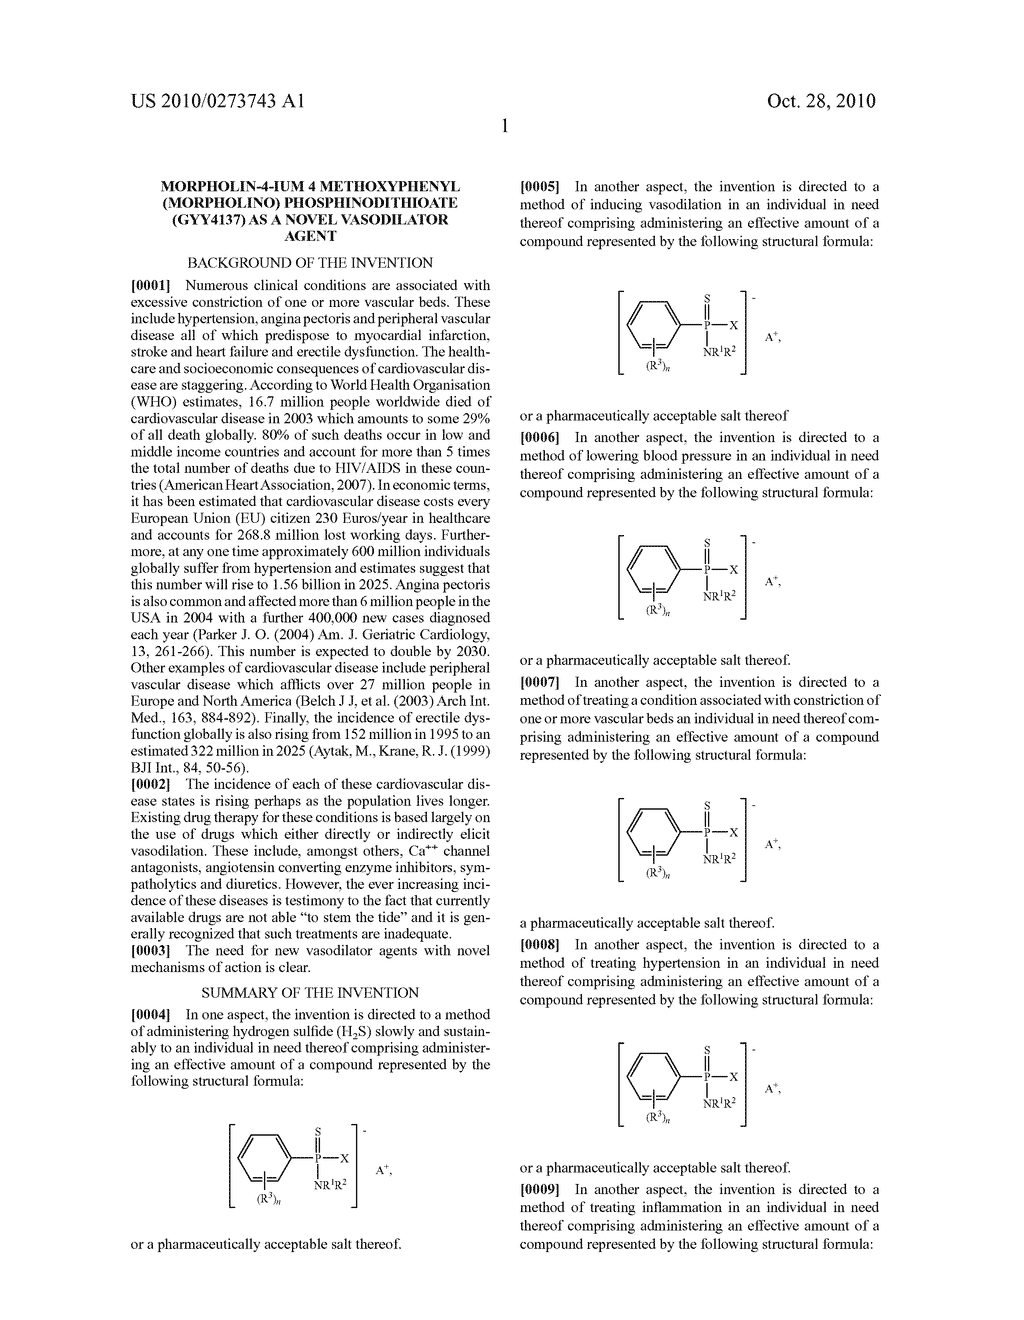 MORPHOLIN-4-IUM 4 METHOXYPHENYL (MORPHOLINO) PHOSPHINODITHIOATE (GYY4137) AS A NOVEL VASODILATOR AGENT - diagram, schematic, and image 22